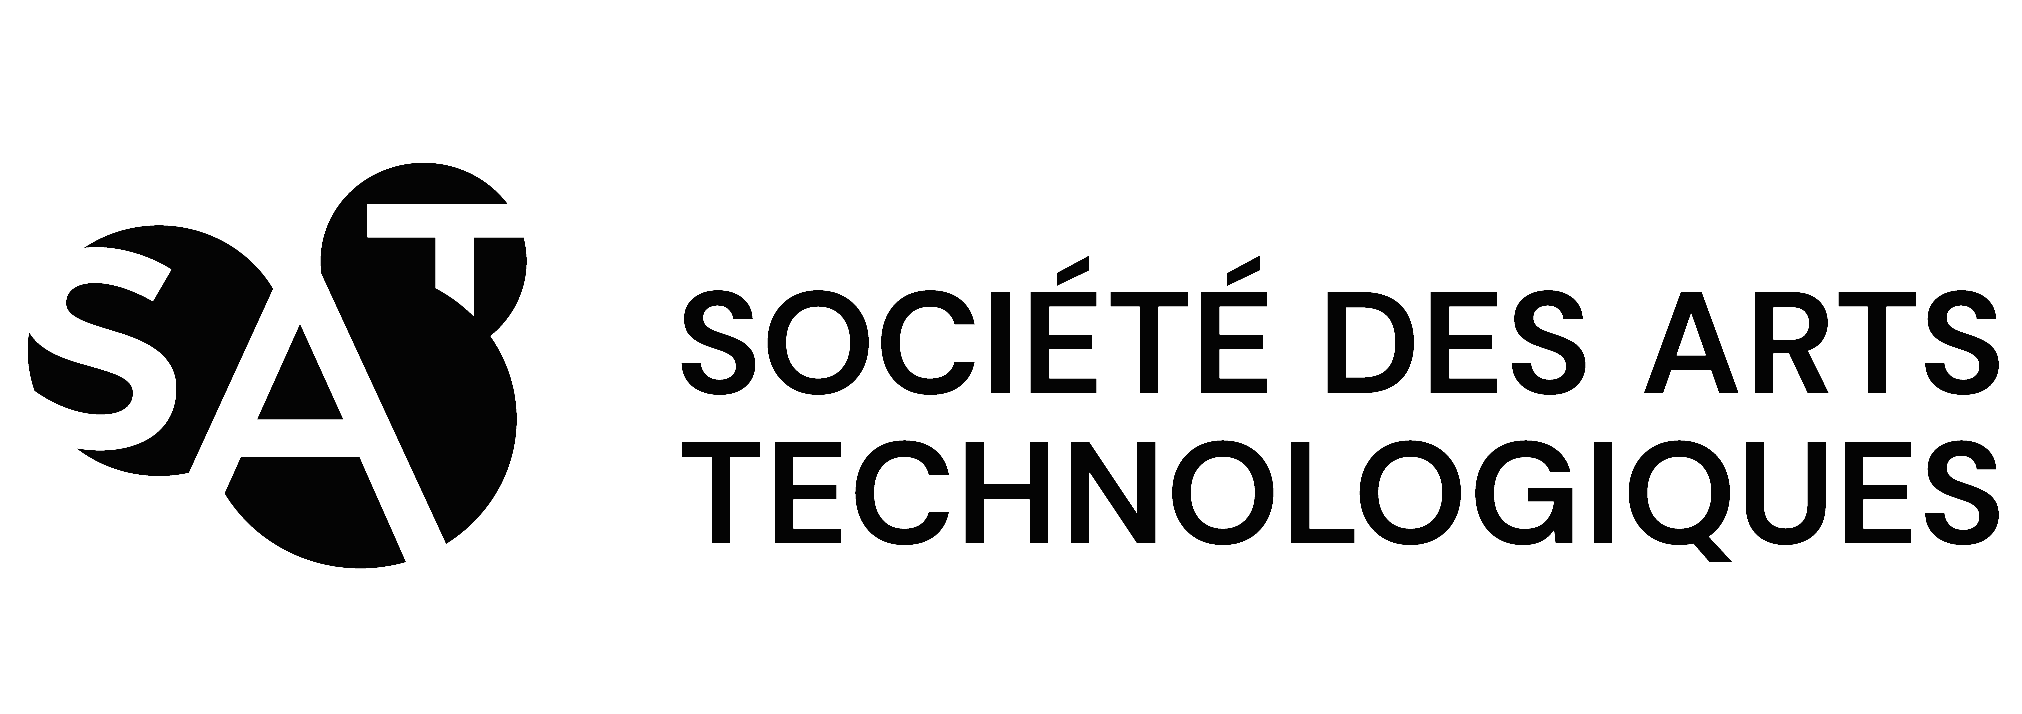 Logo de la Société des arts technologiques.